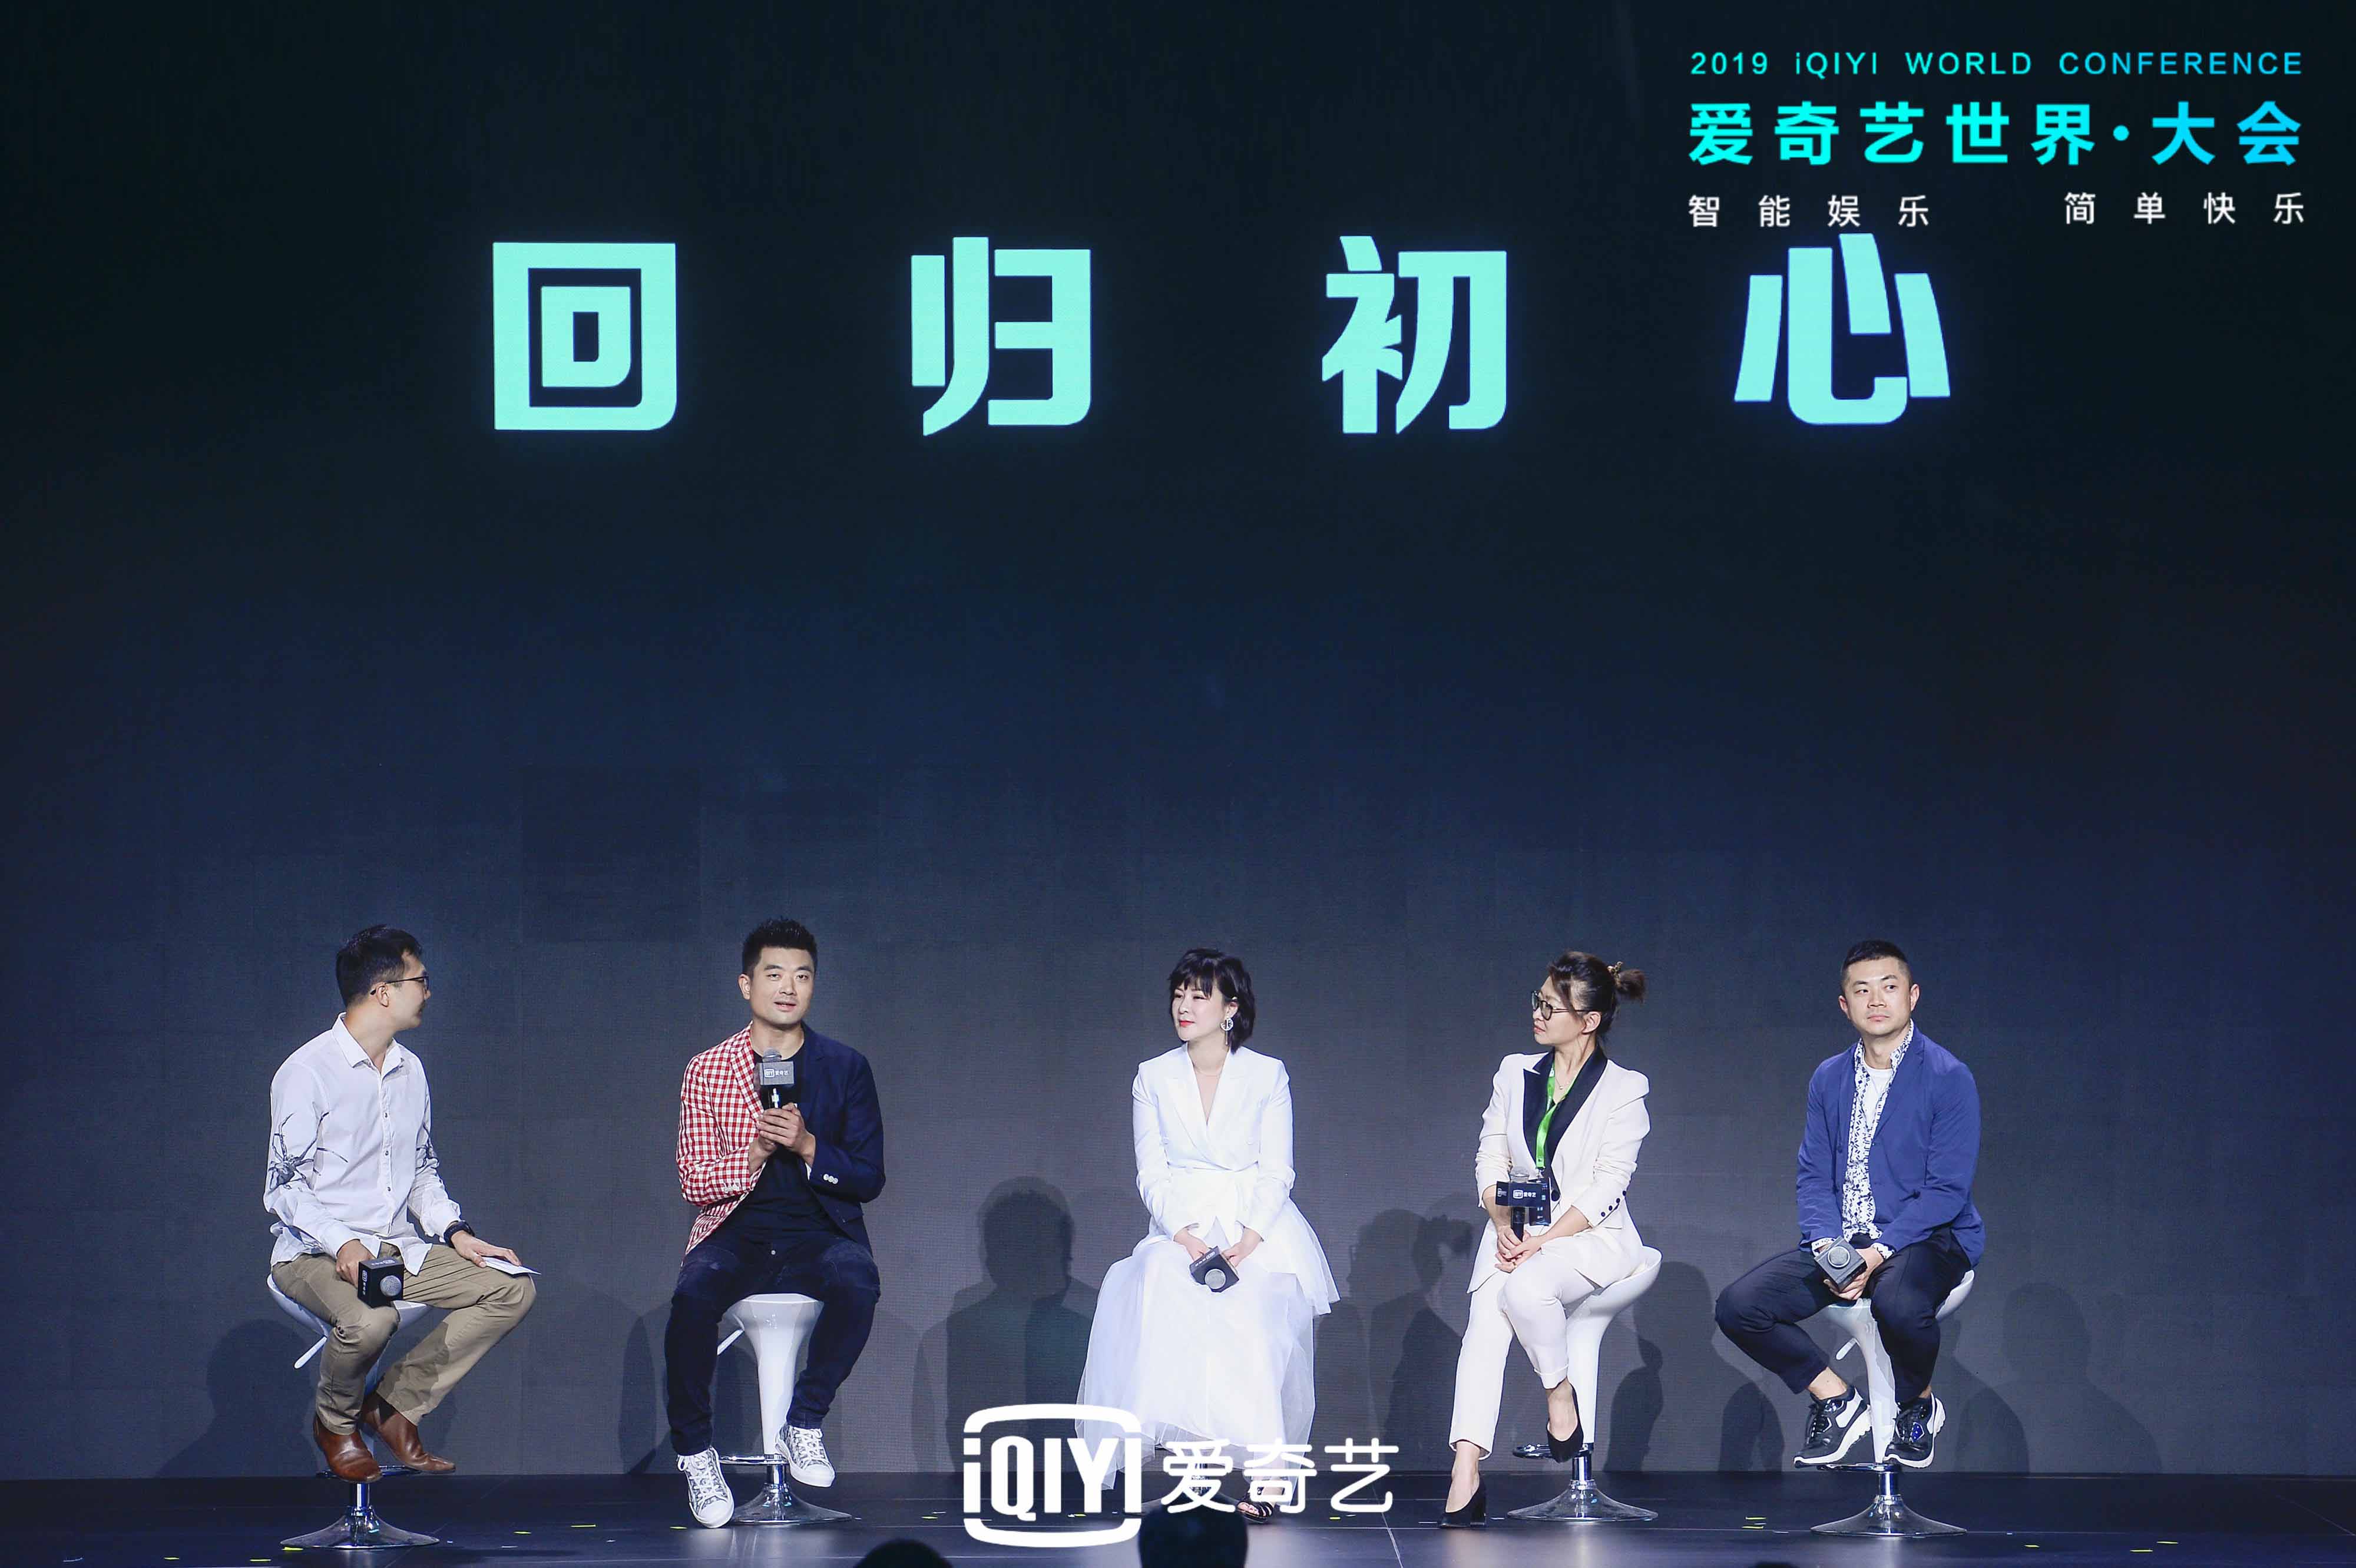 中国首届艺人经纪论坛在京举办 微峰娱乐董事长黄斌发言“我们的尊严来自专业”